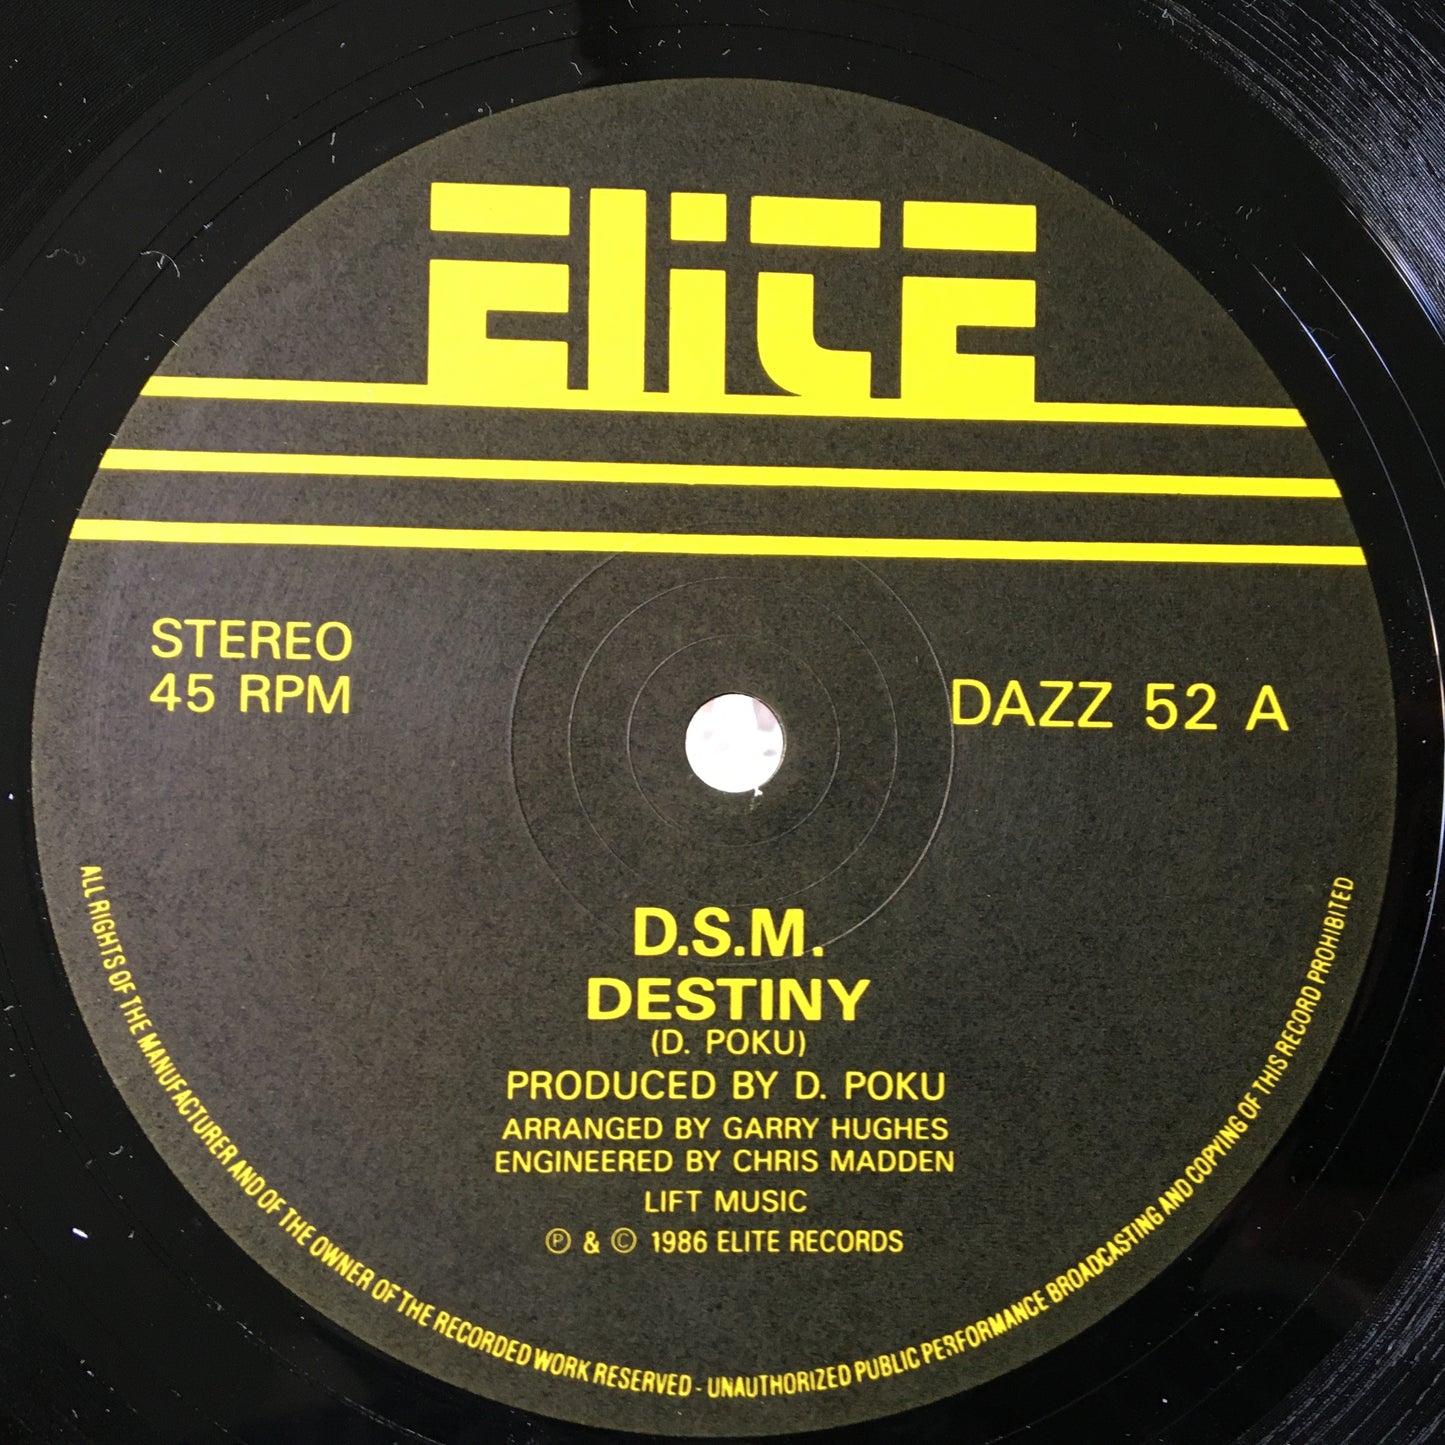 D.S.M. – Destiny